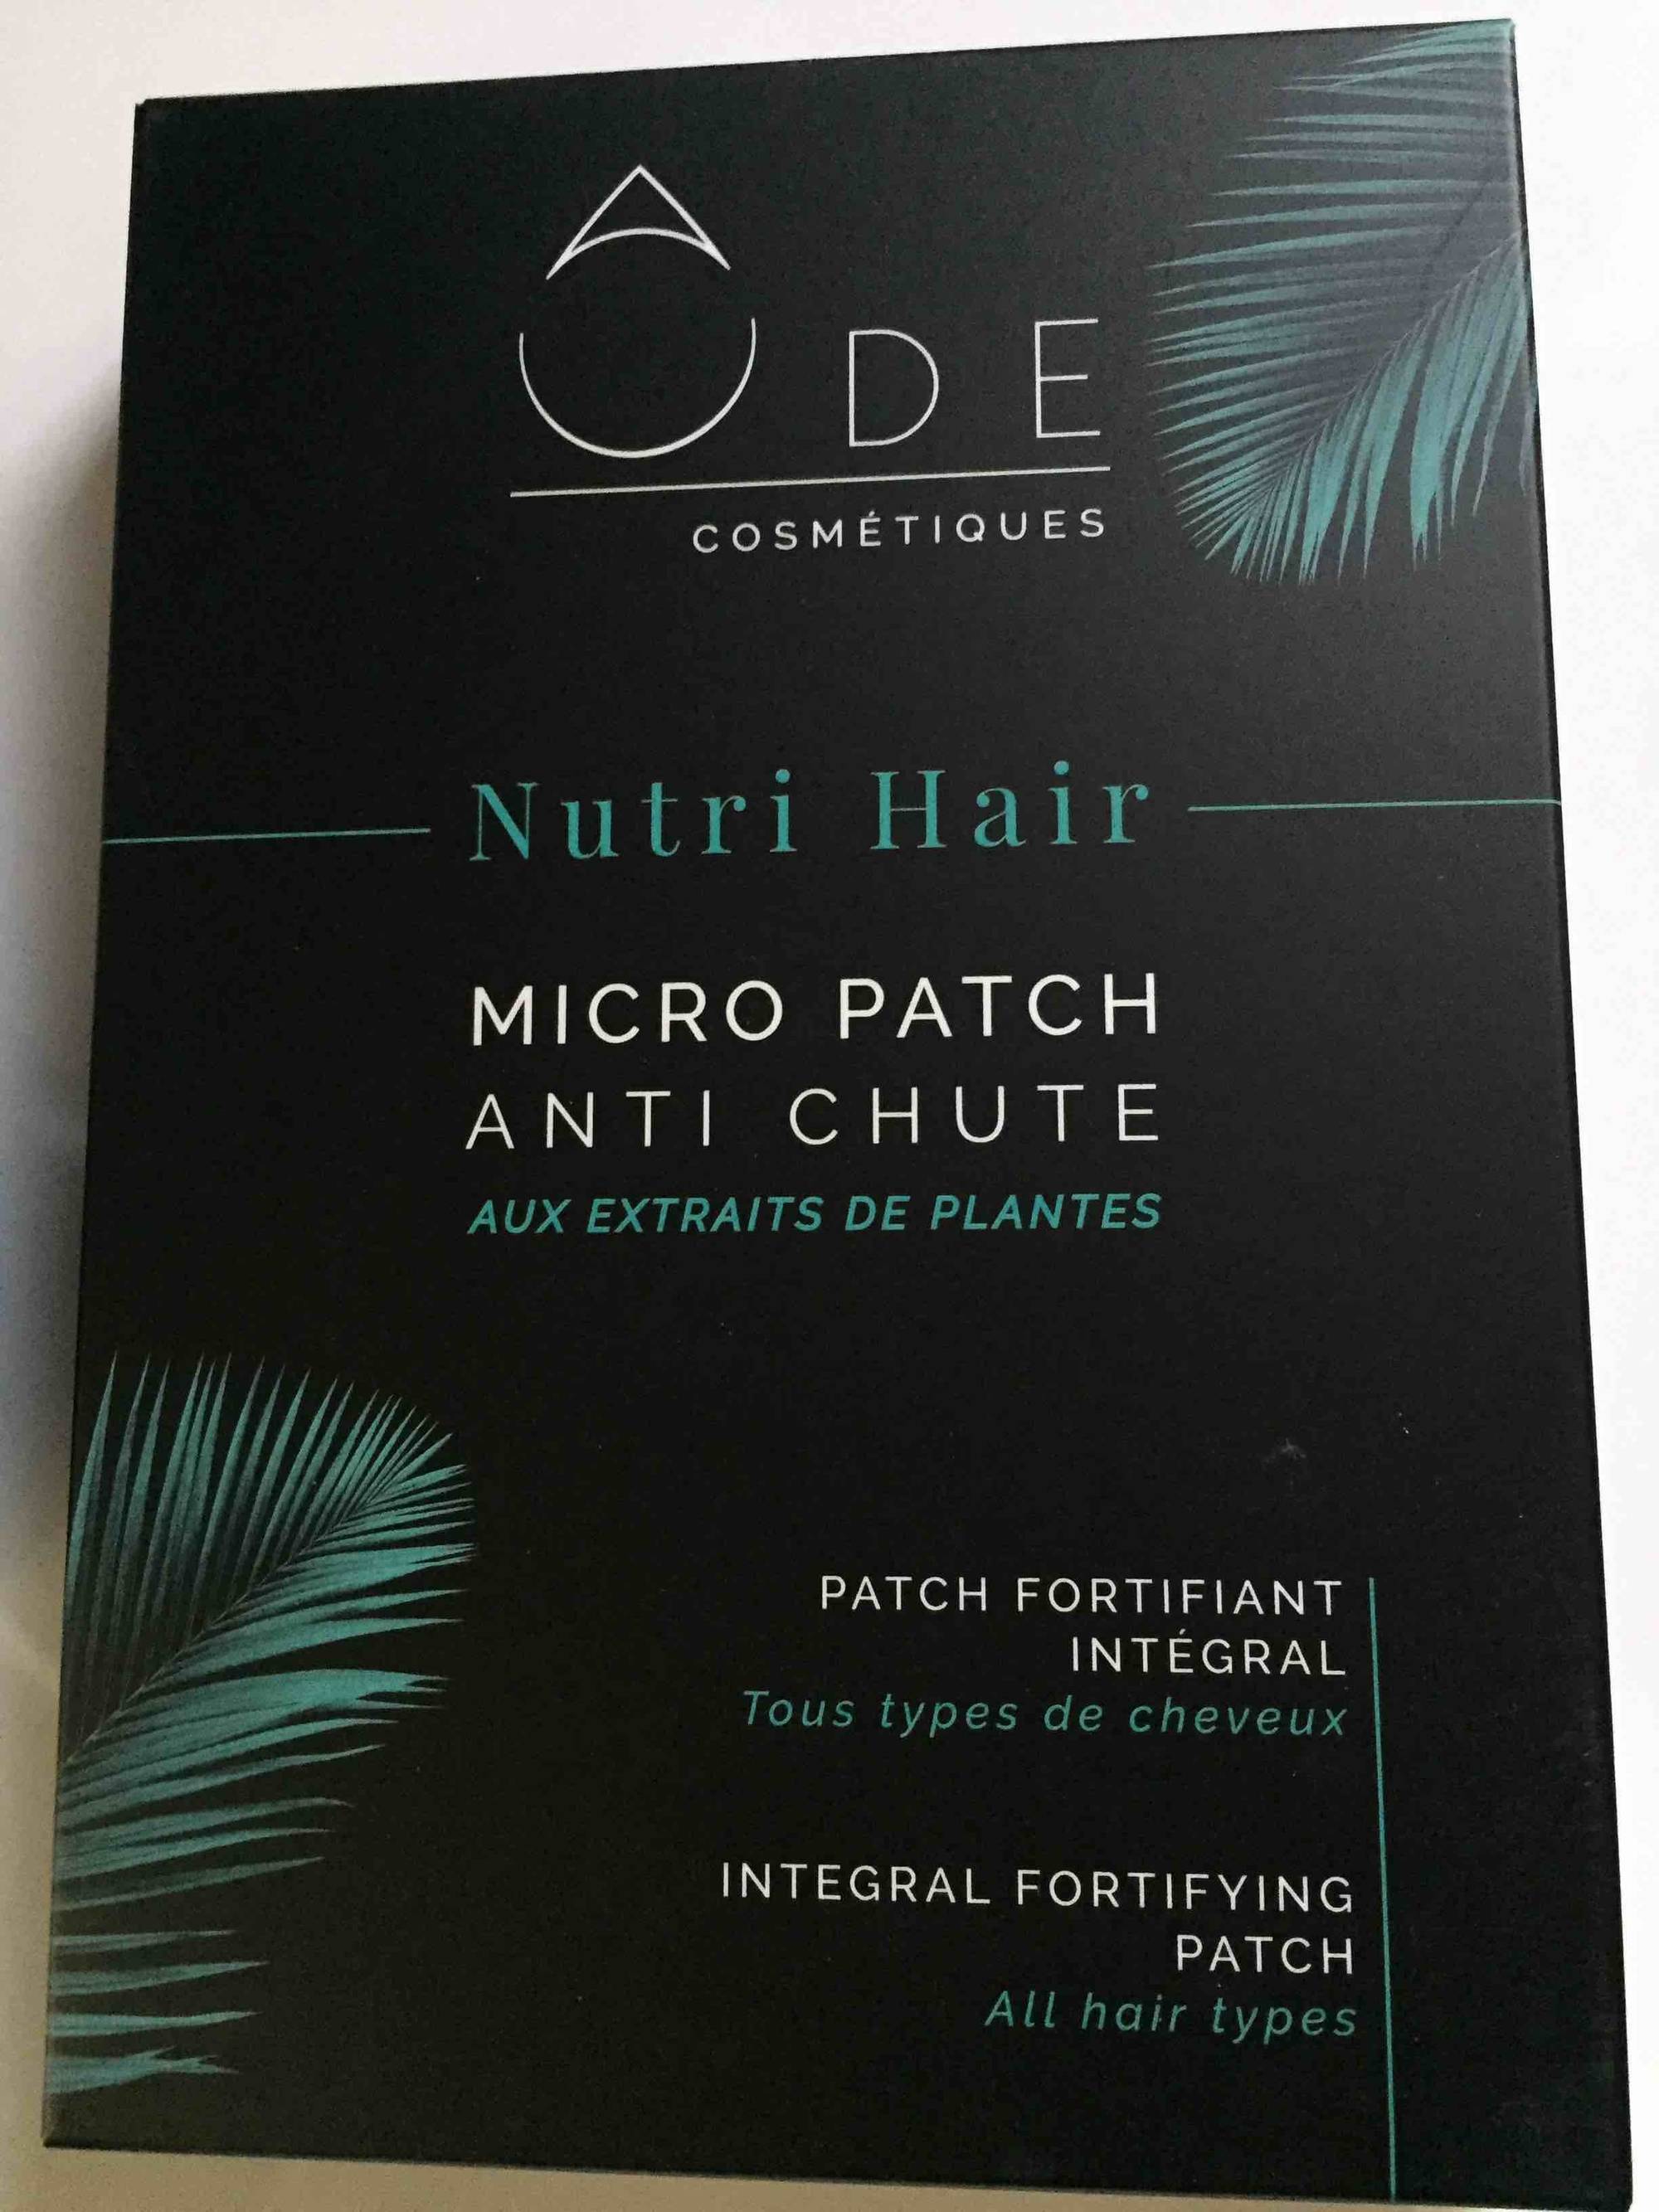 ÔDE COSMÉTIQUES - Nutri hair - Micro patch anti chute aux extraits de plantes